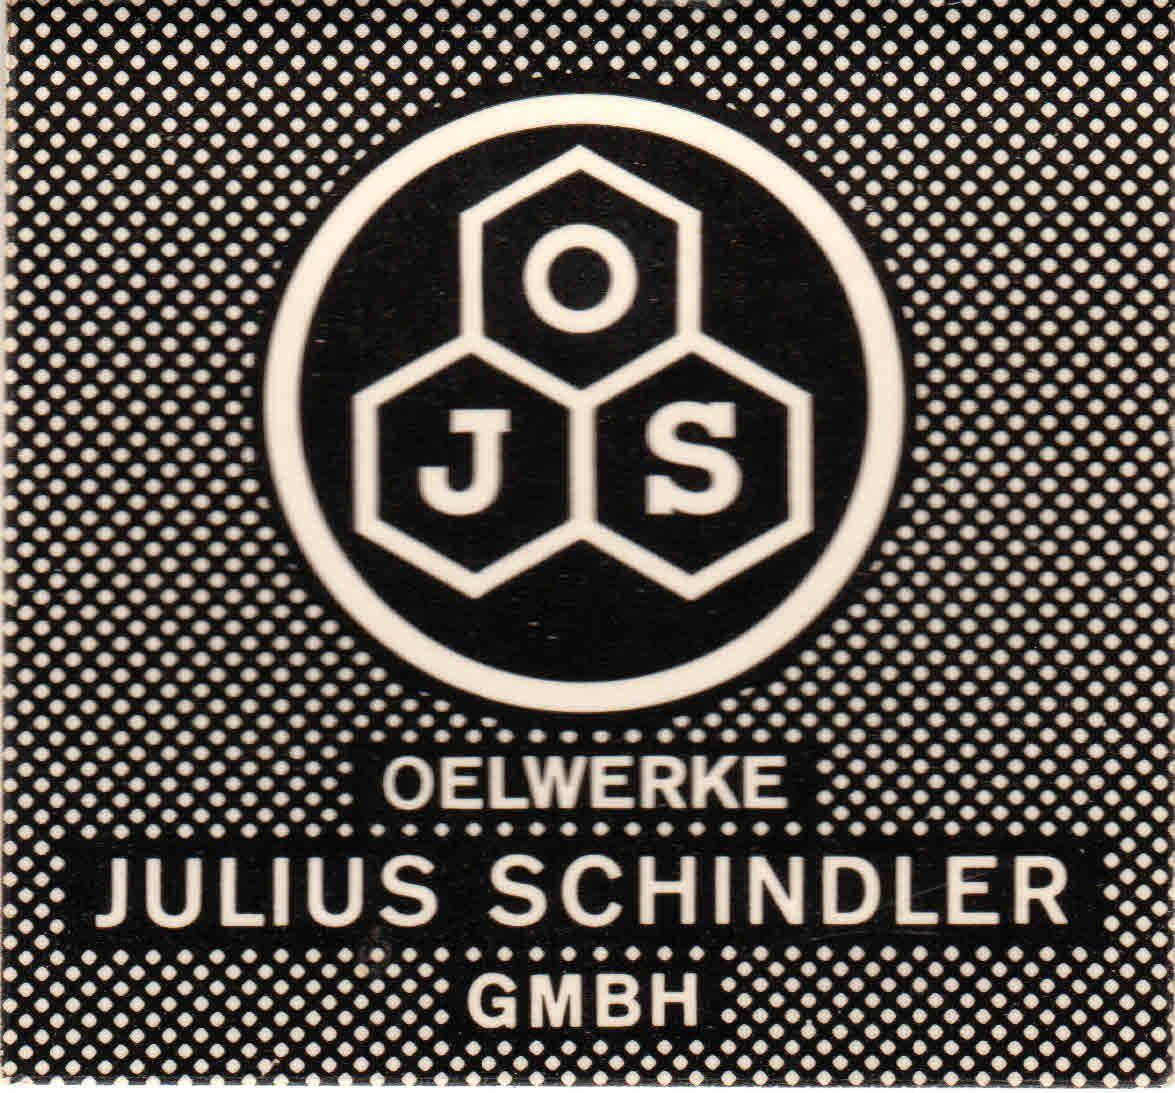 Oelwerke Julius Schindler G.M.B.H.